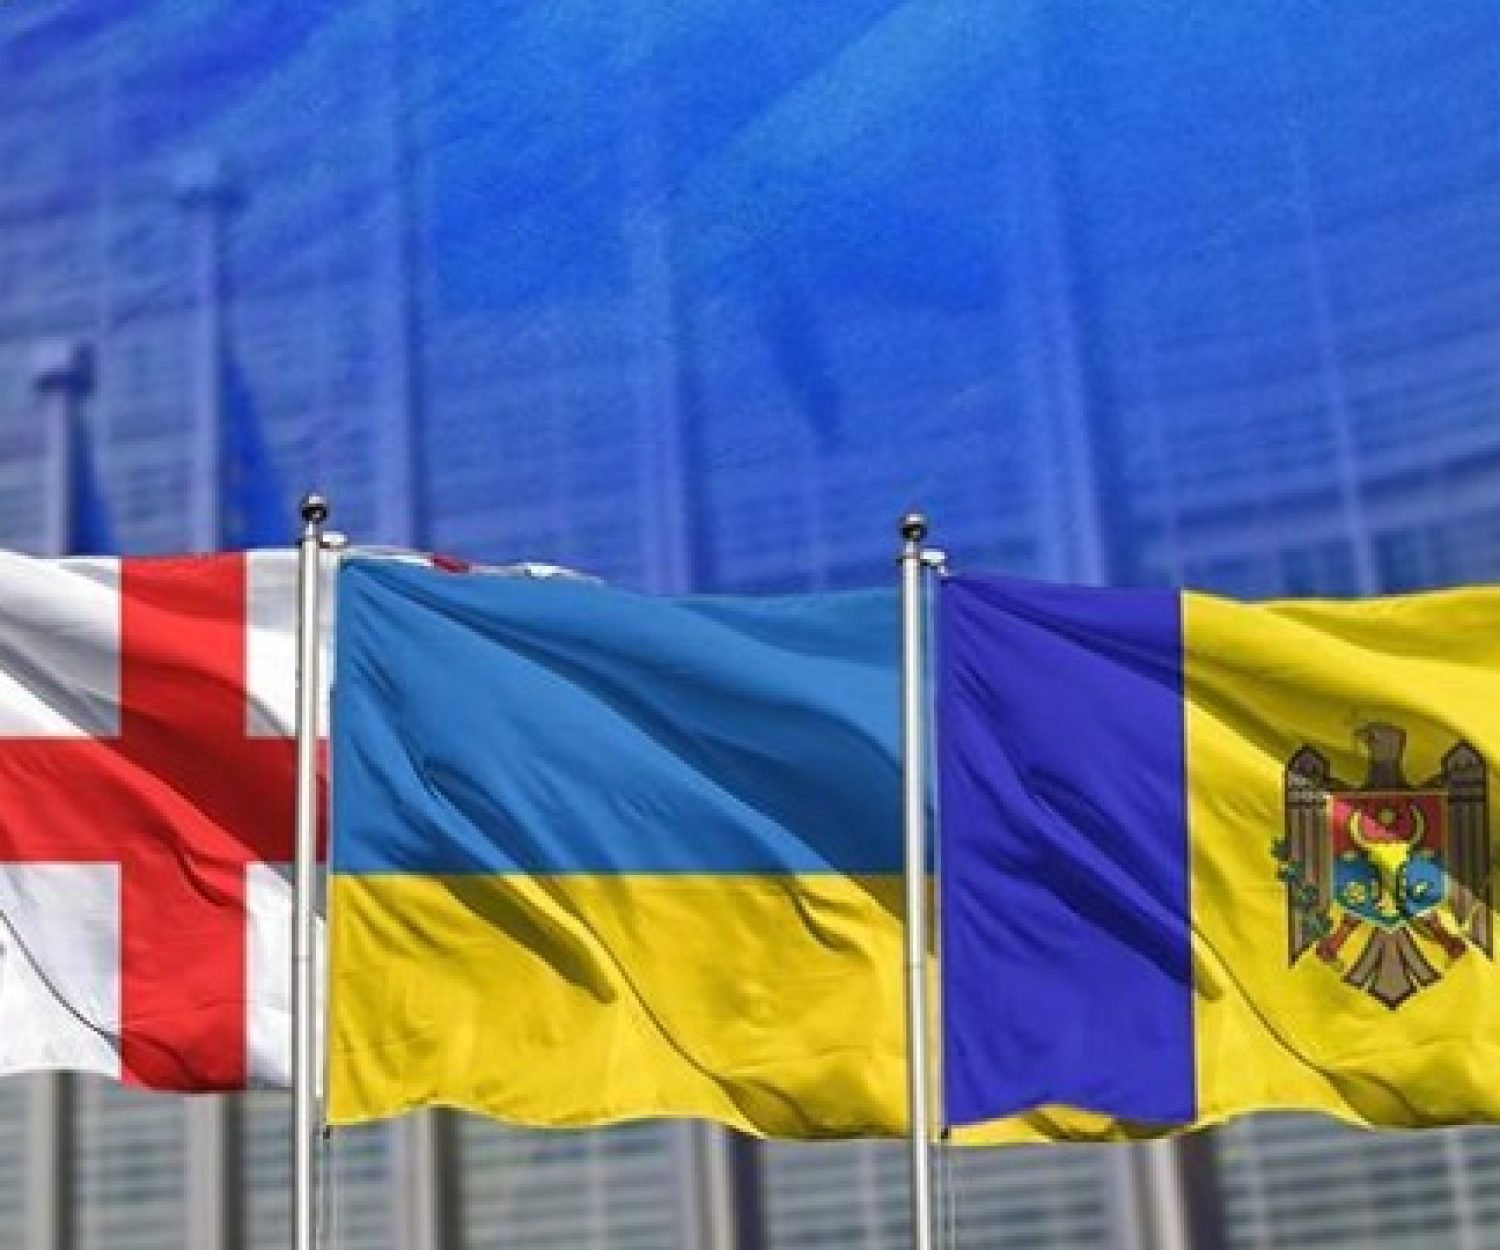 Членство молдавии в нато. Украина Грузия Молдова НАТО. Украины, Грузии, Молдавии в НАТО. Флаги Грузии, Молдовы и Украины. НАТО Украина Грузия флаги.